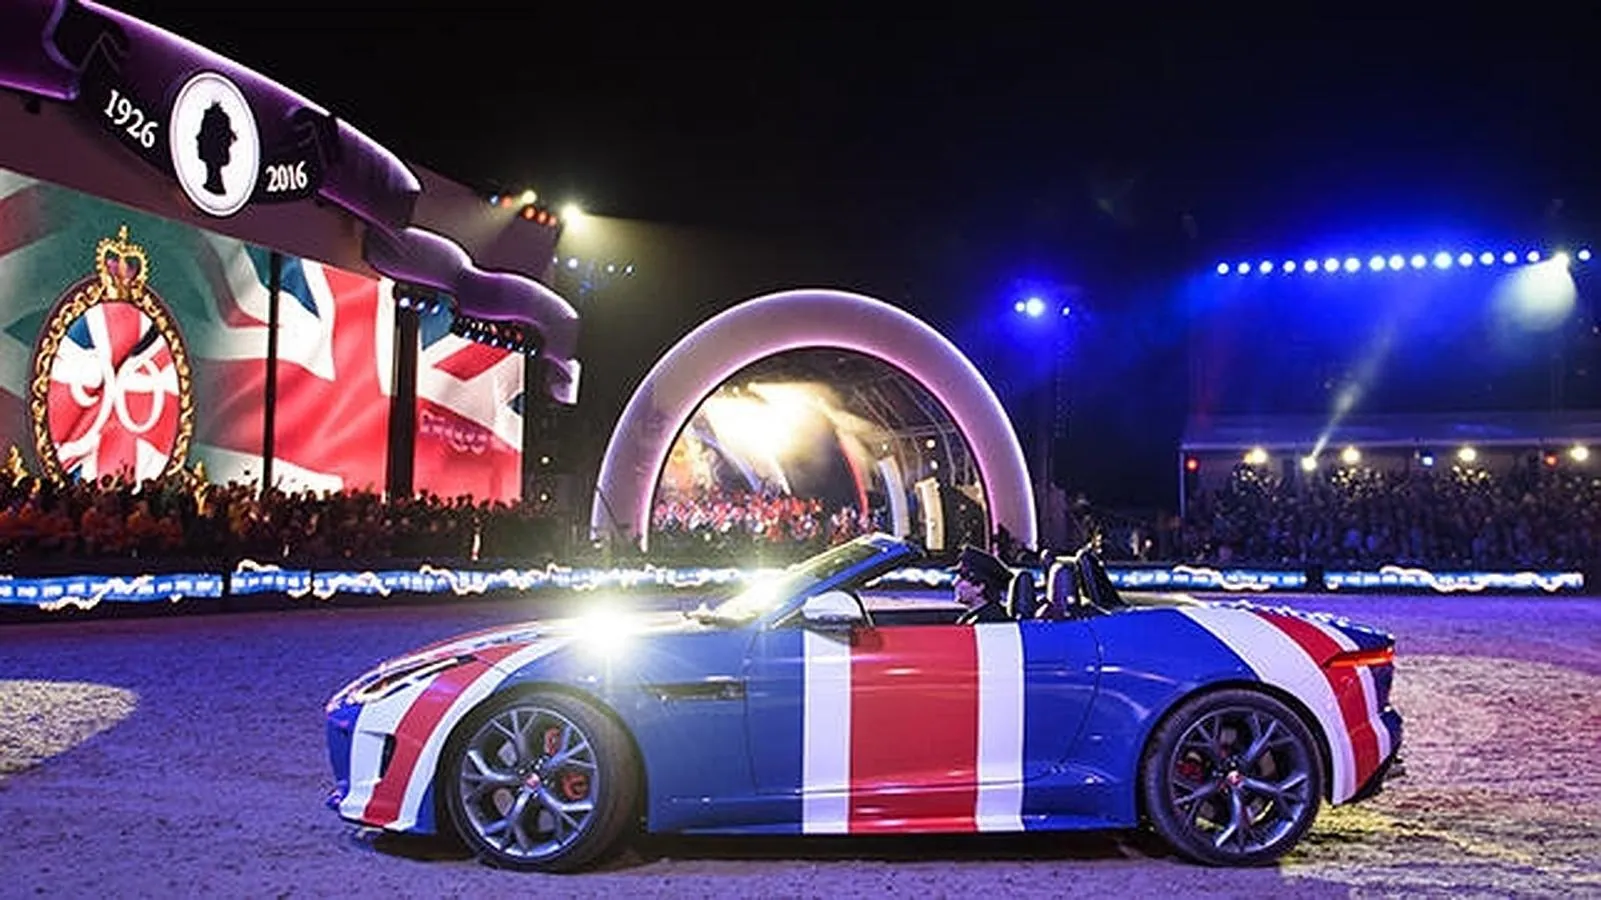 El Jaguar F-TYPE pintado con los colores de la bandera británica